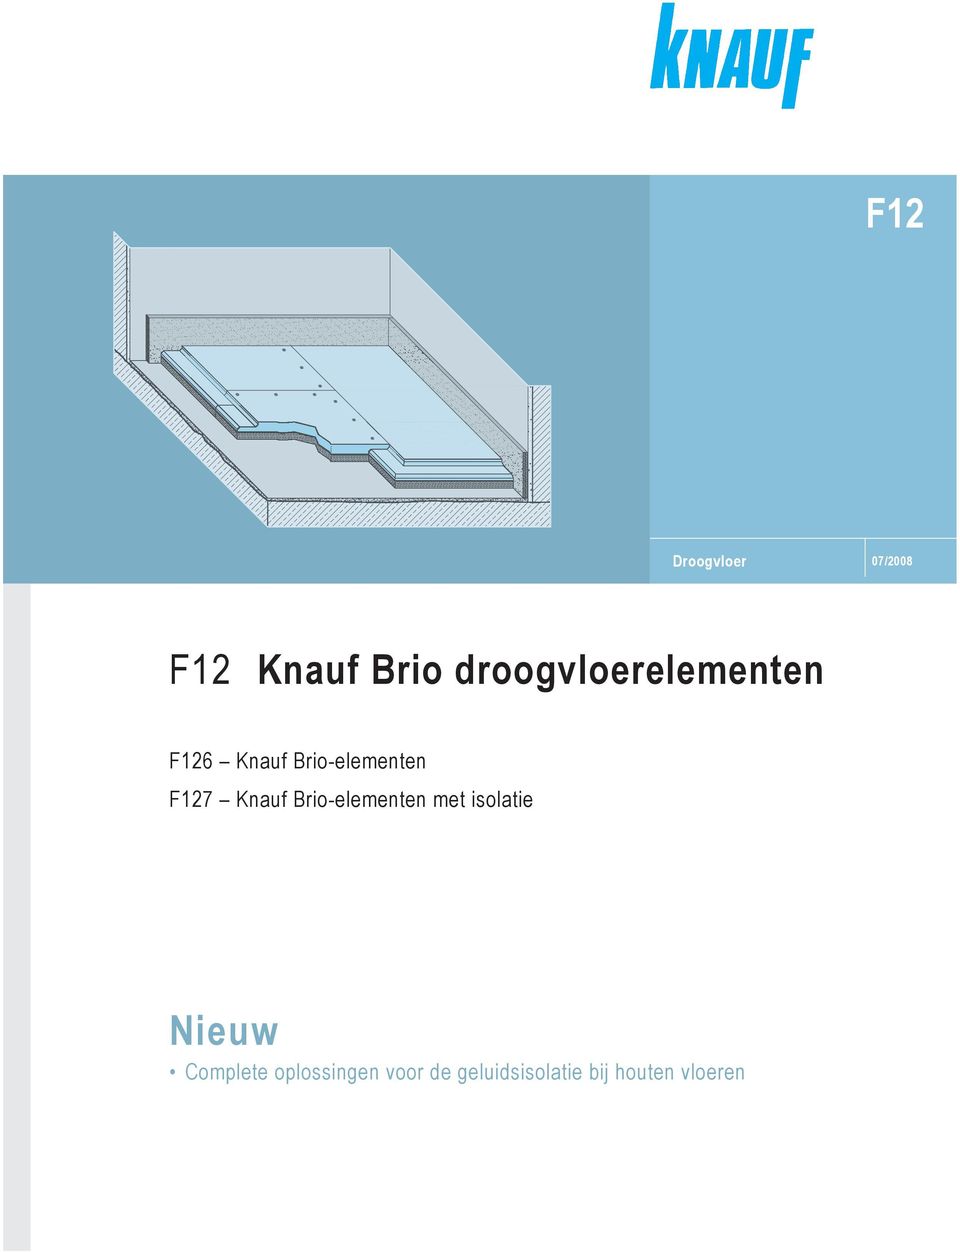 F127 Knauf Brio-elementen met isolatie Nieuw